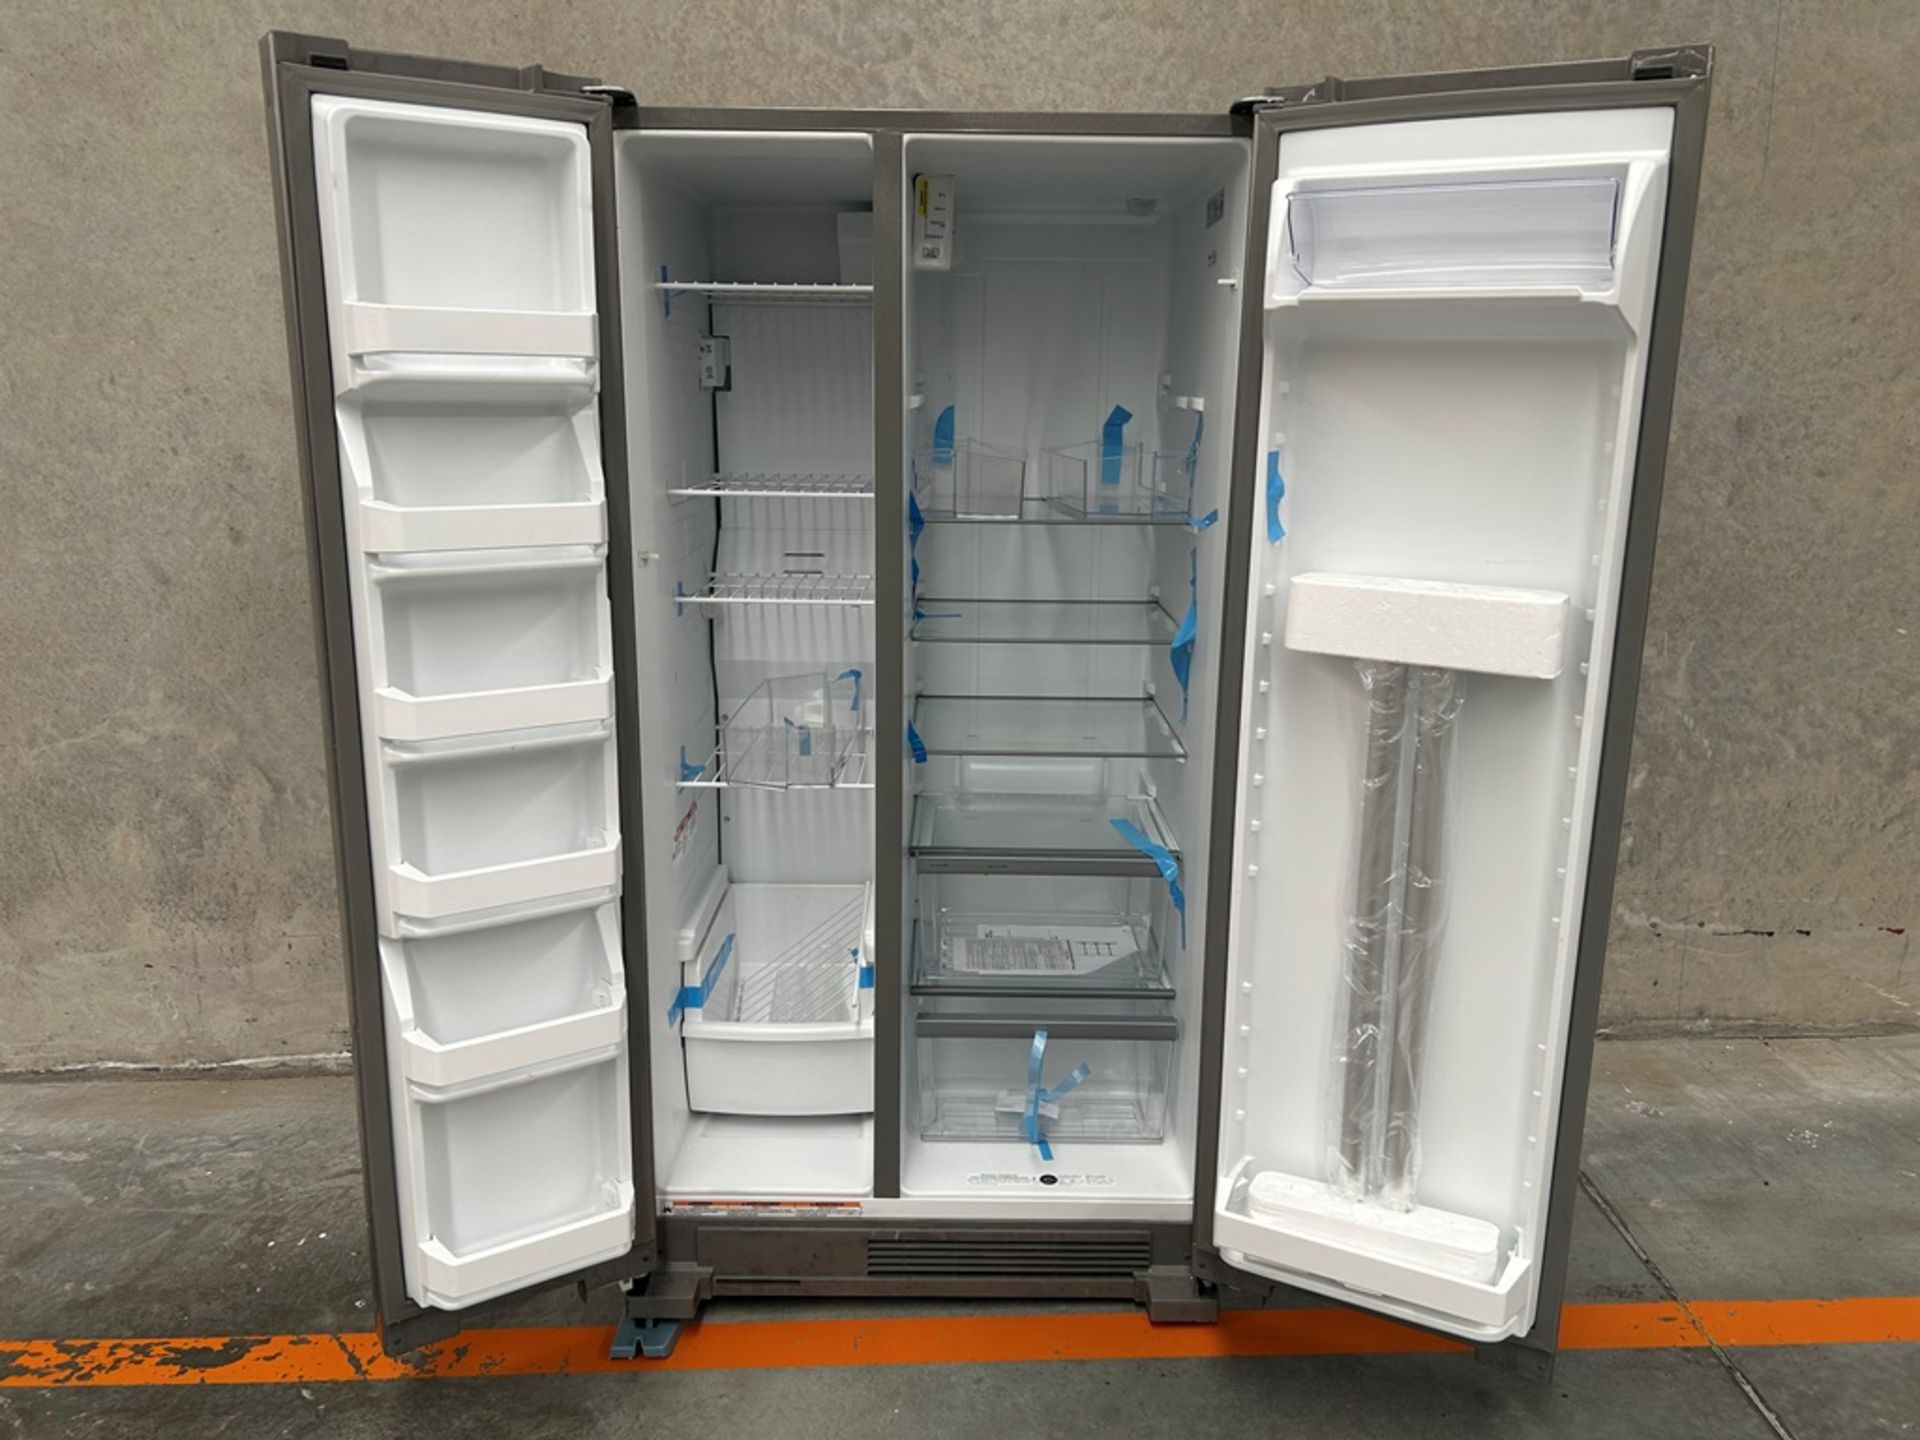 Refrigerador Marca WHIRLPOOL, Modelo WD5600S, Serie 813311, Color GRIS (Equipo de Devolución) - Image 4 of 9